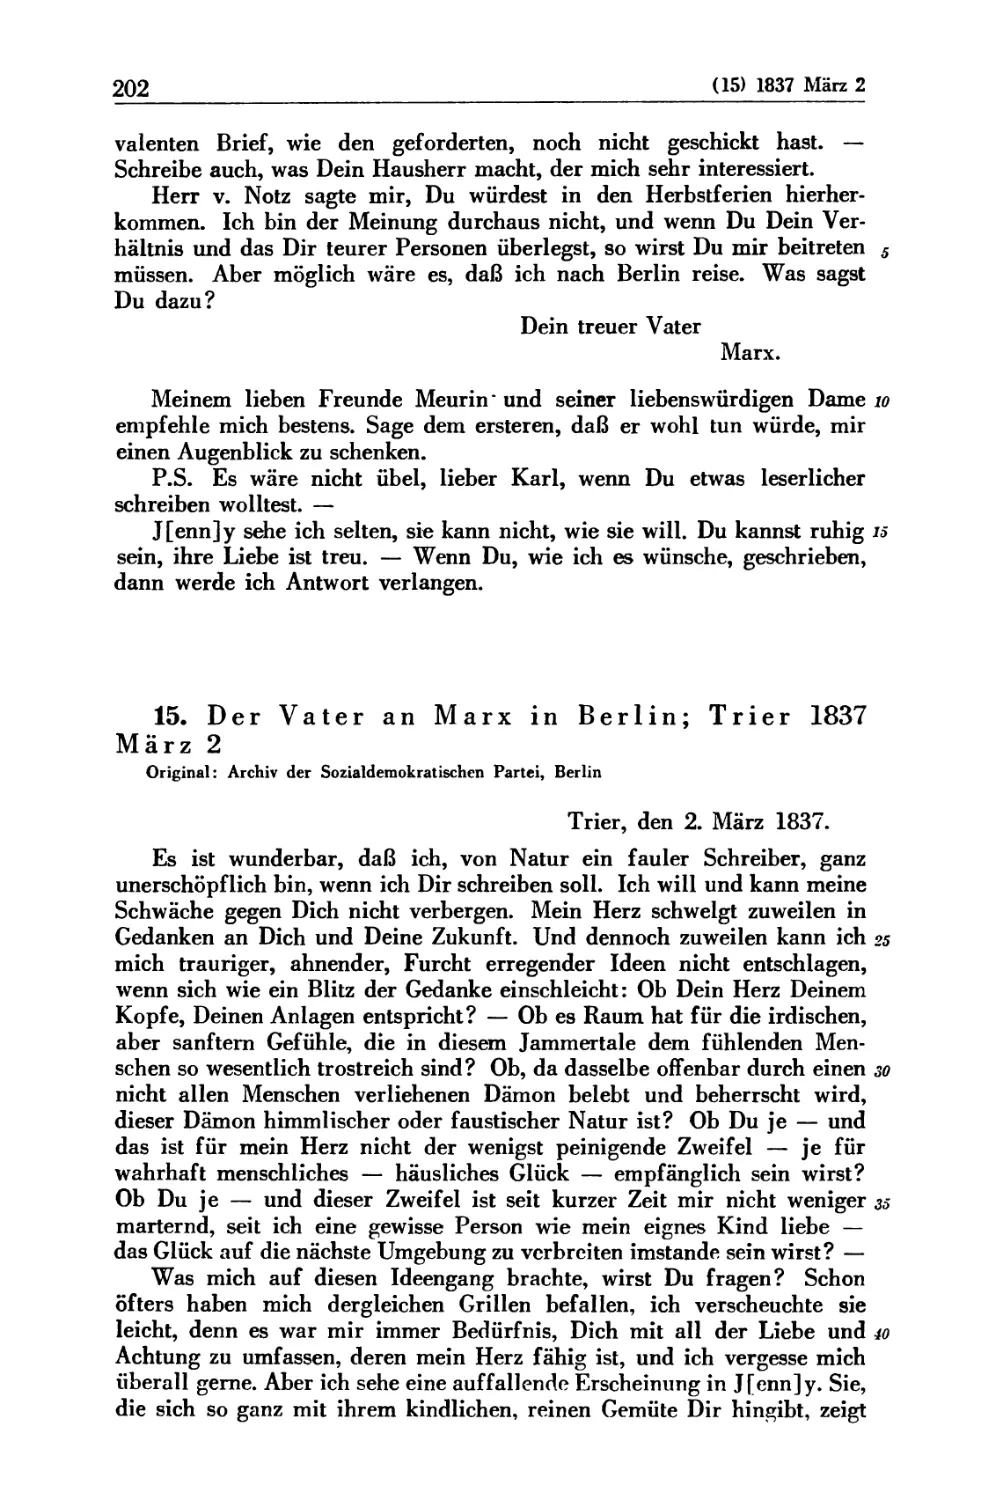 15. Der Vater an Marx in Berlin; Trier 1837 März 2